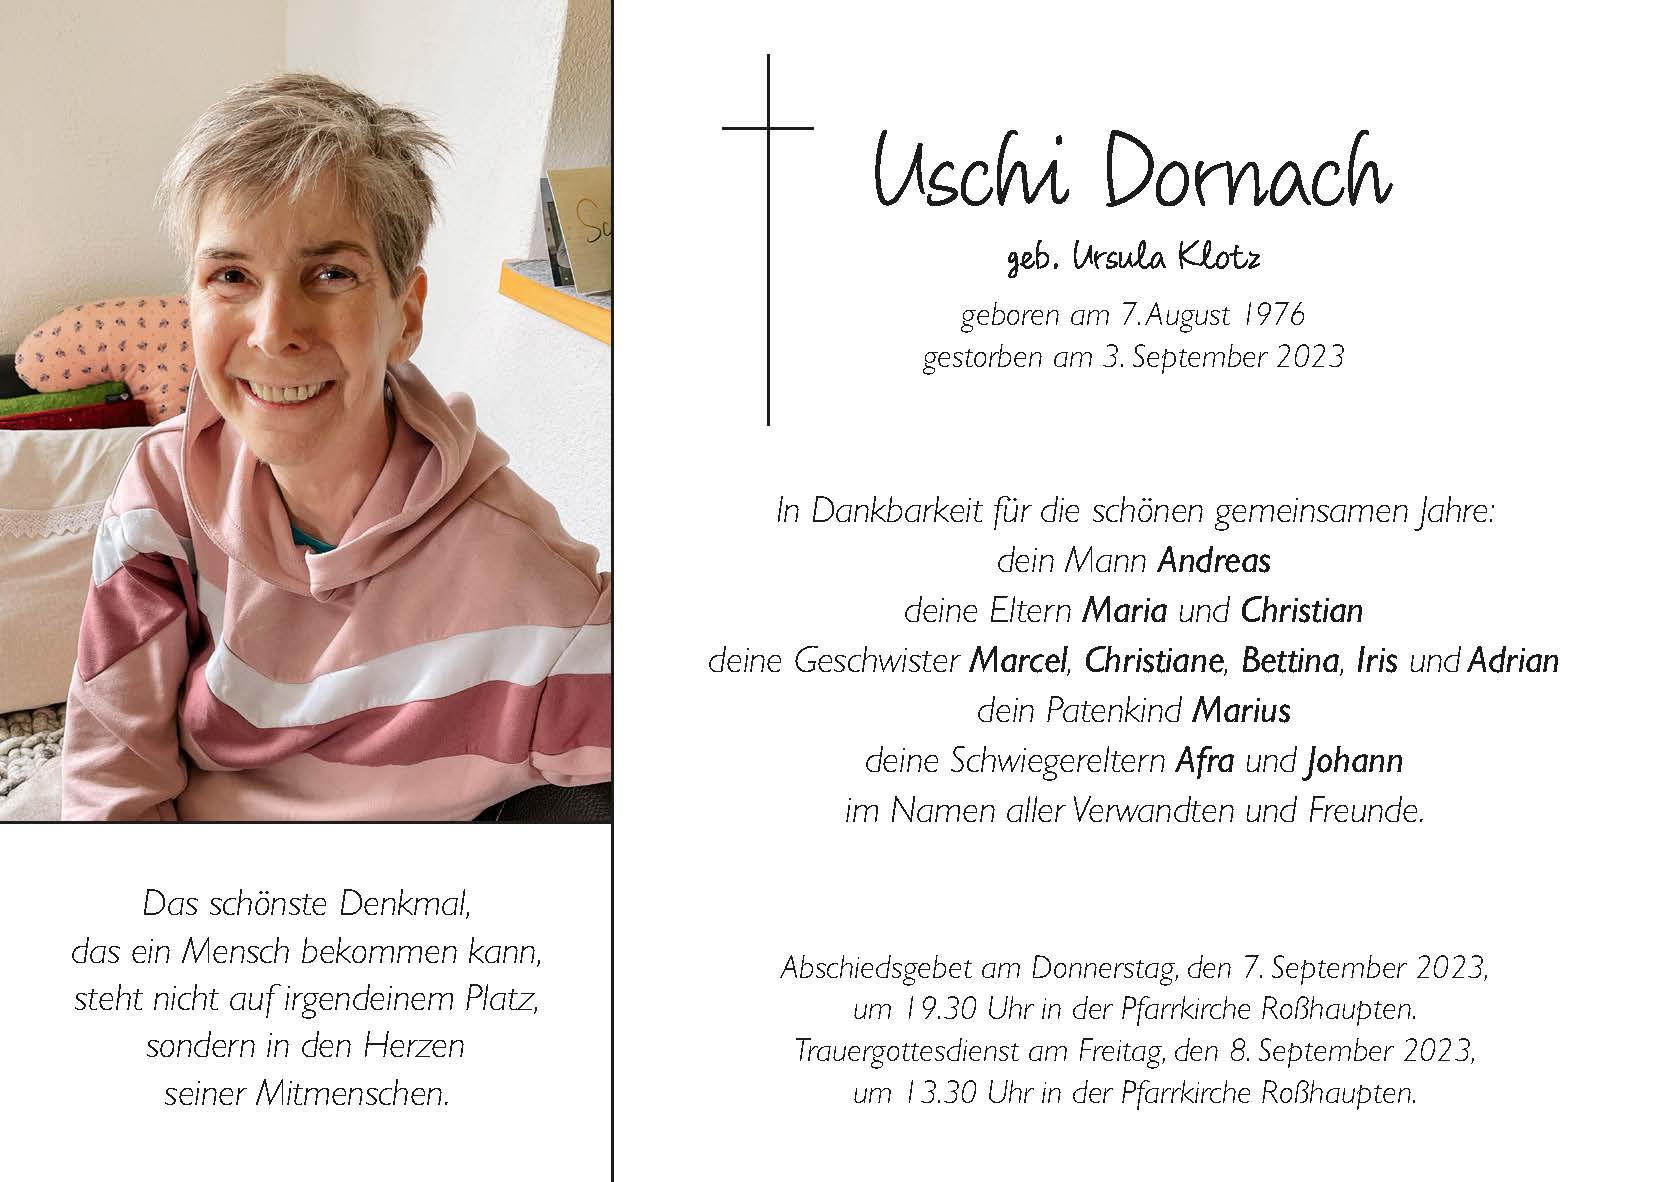 TA_Uschi Dornbach